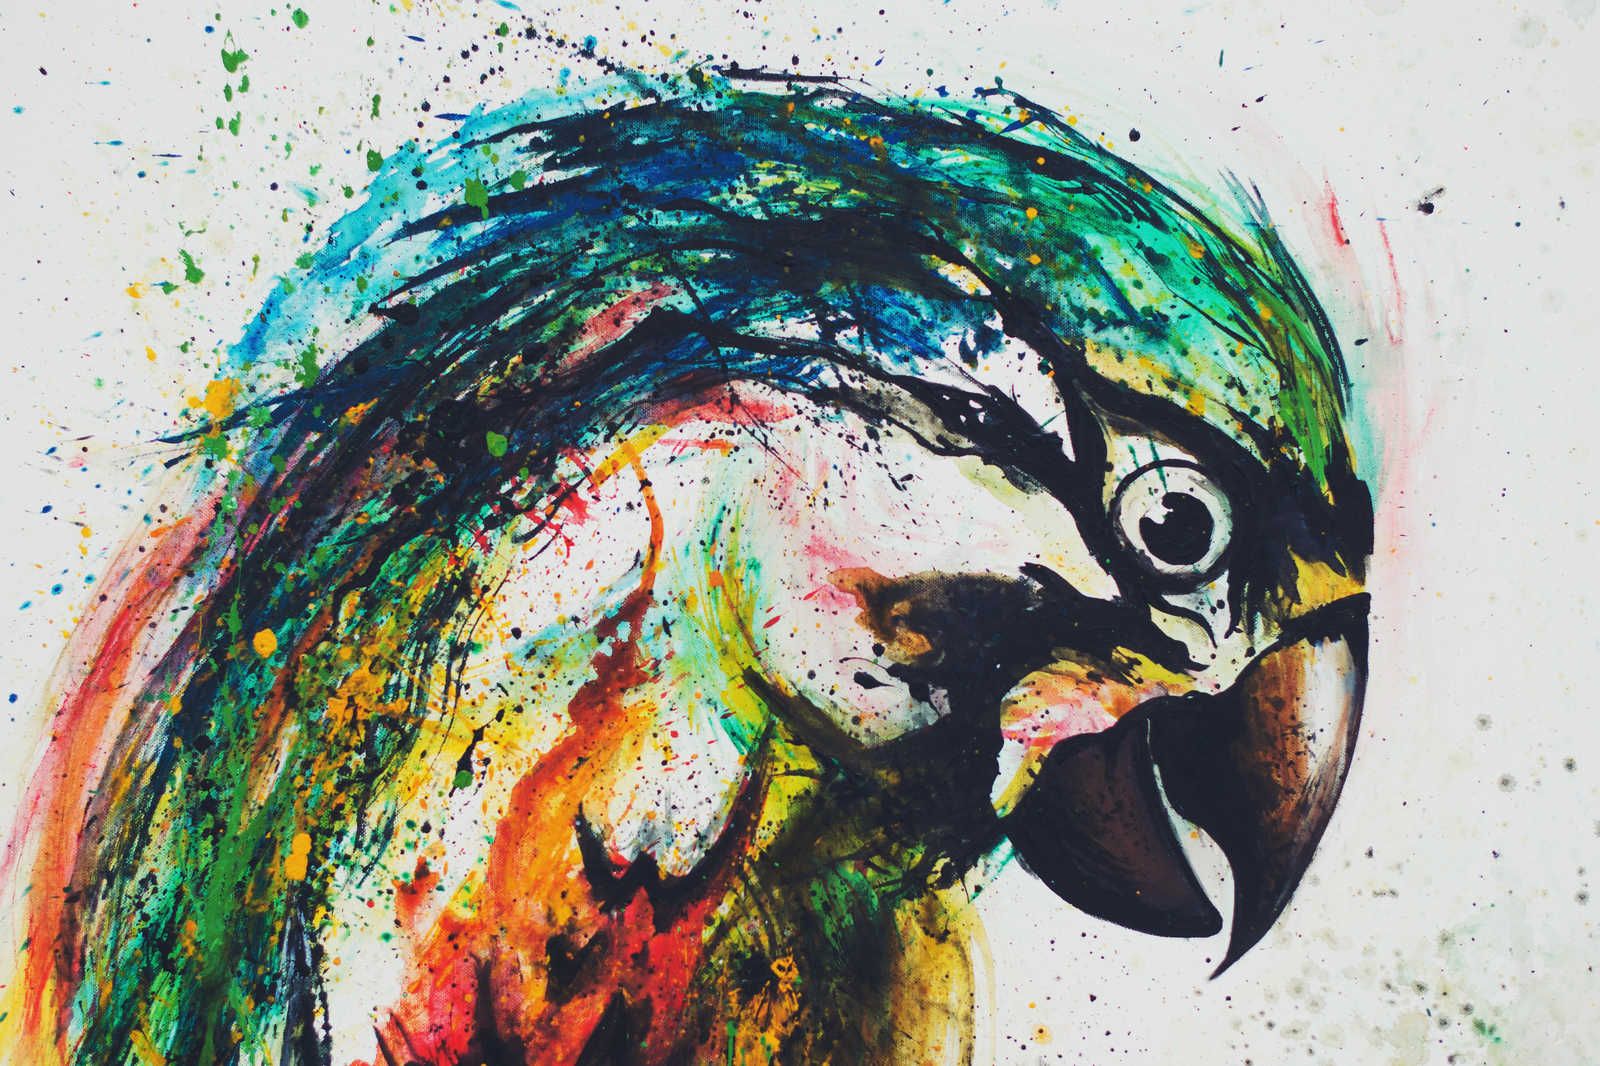             Leinwandbild Papagei im bunten Zeichenstil – 0,90 m x 0,60 m
        